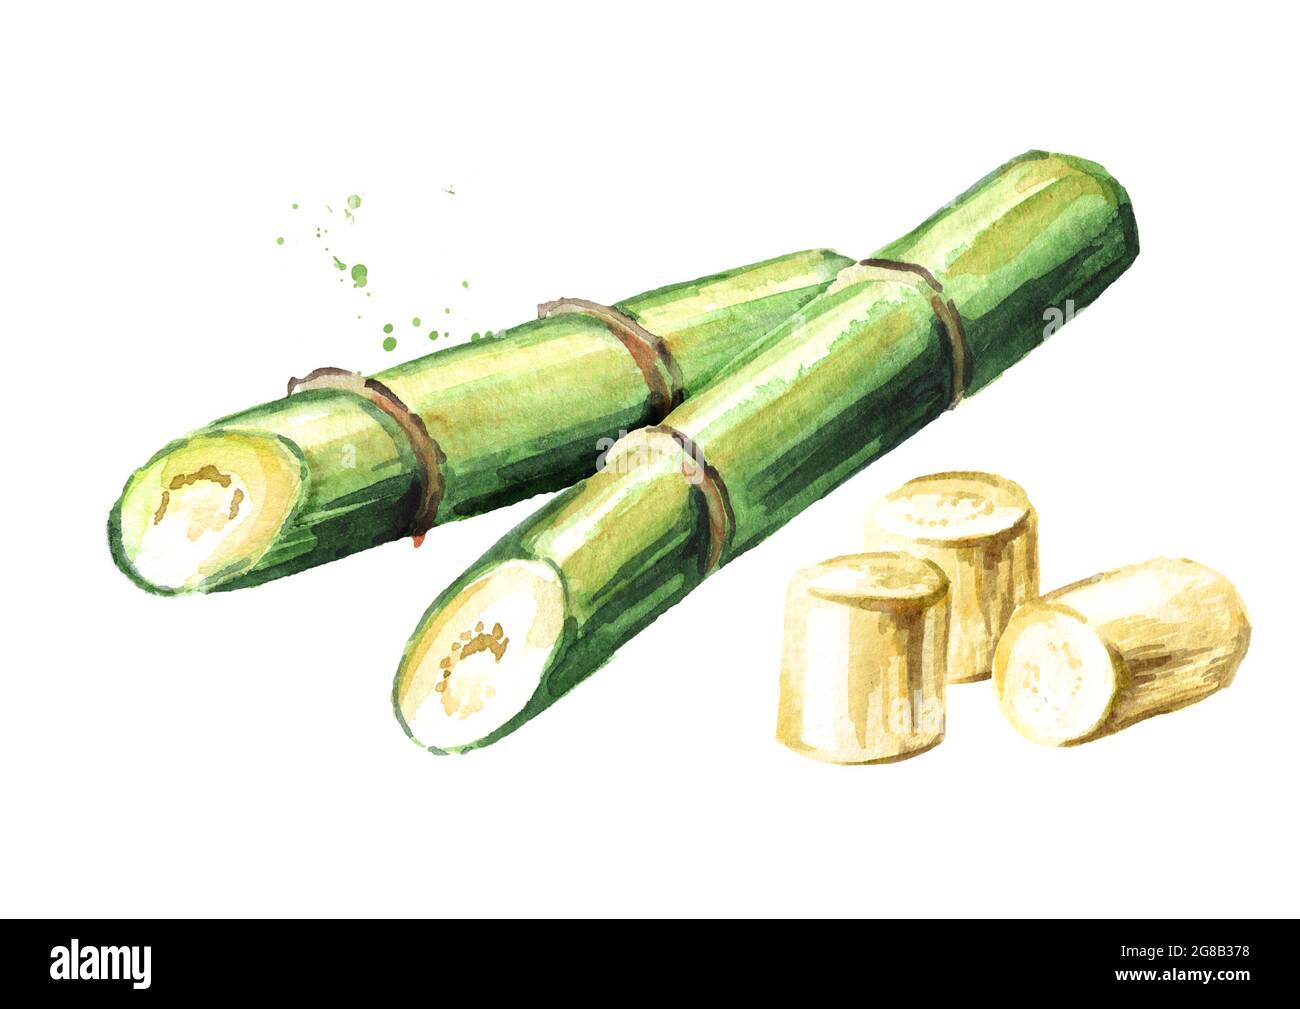 Б сахарный тростник. Сахарный тростник акварель. Вьетнам тростник сахарный тростник. Сахарный тростник на белом фоне. Сахарный тростник на прозрачном фоне.